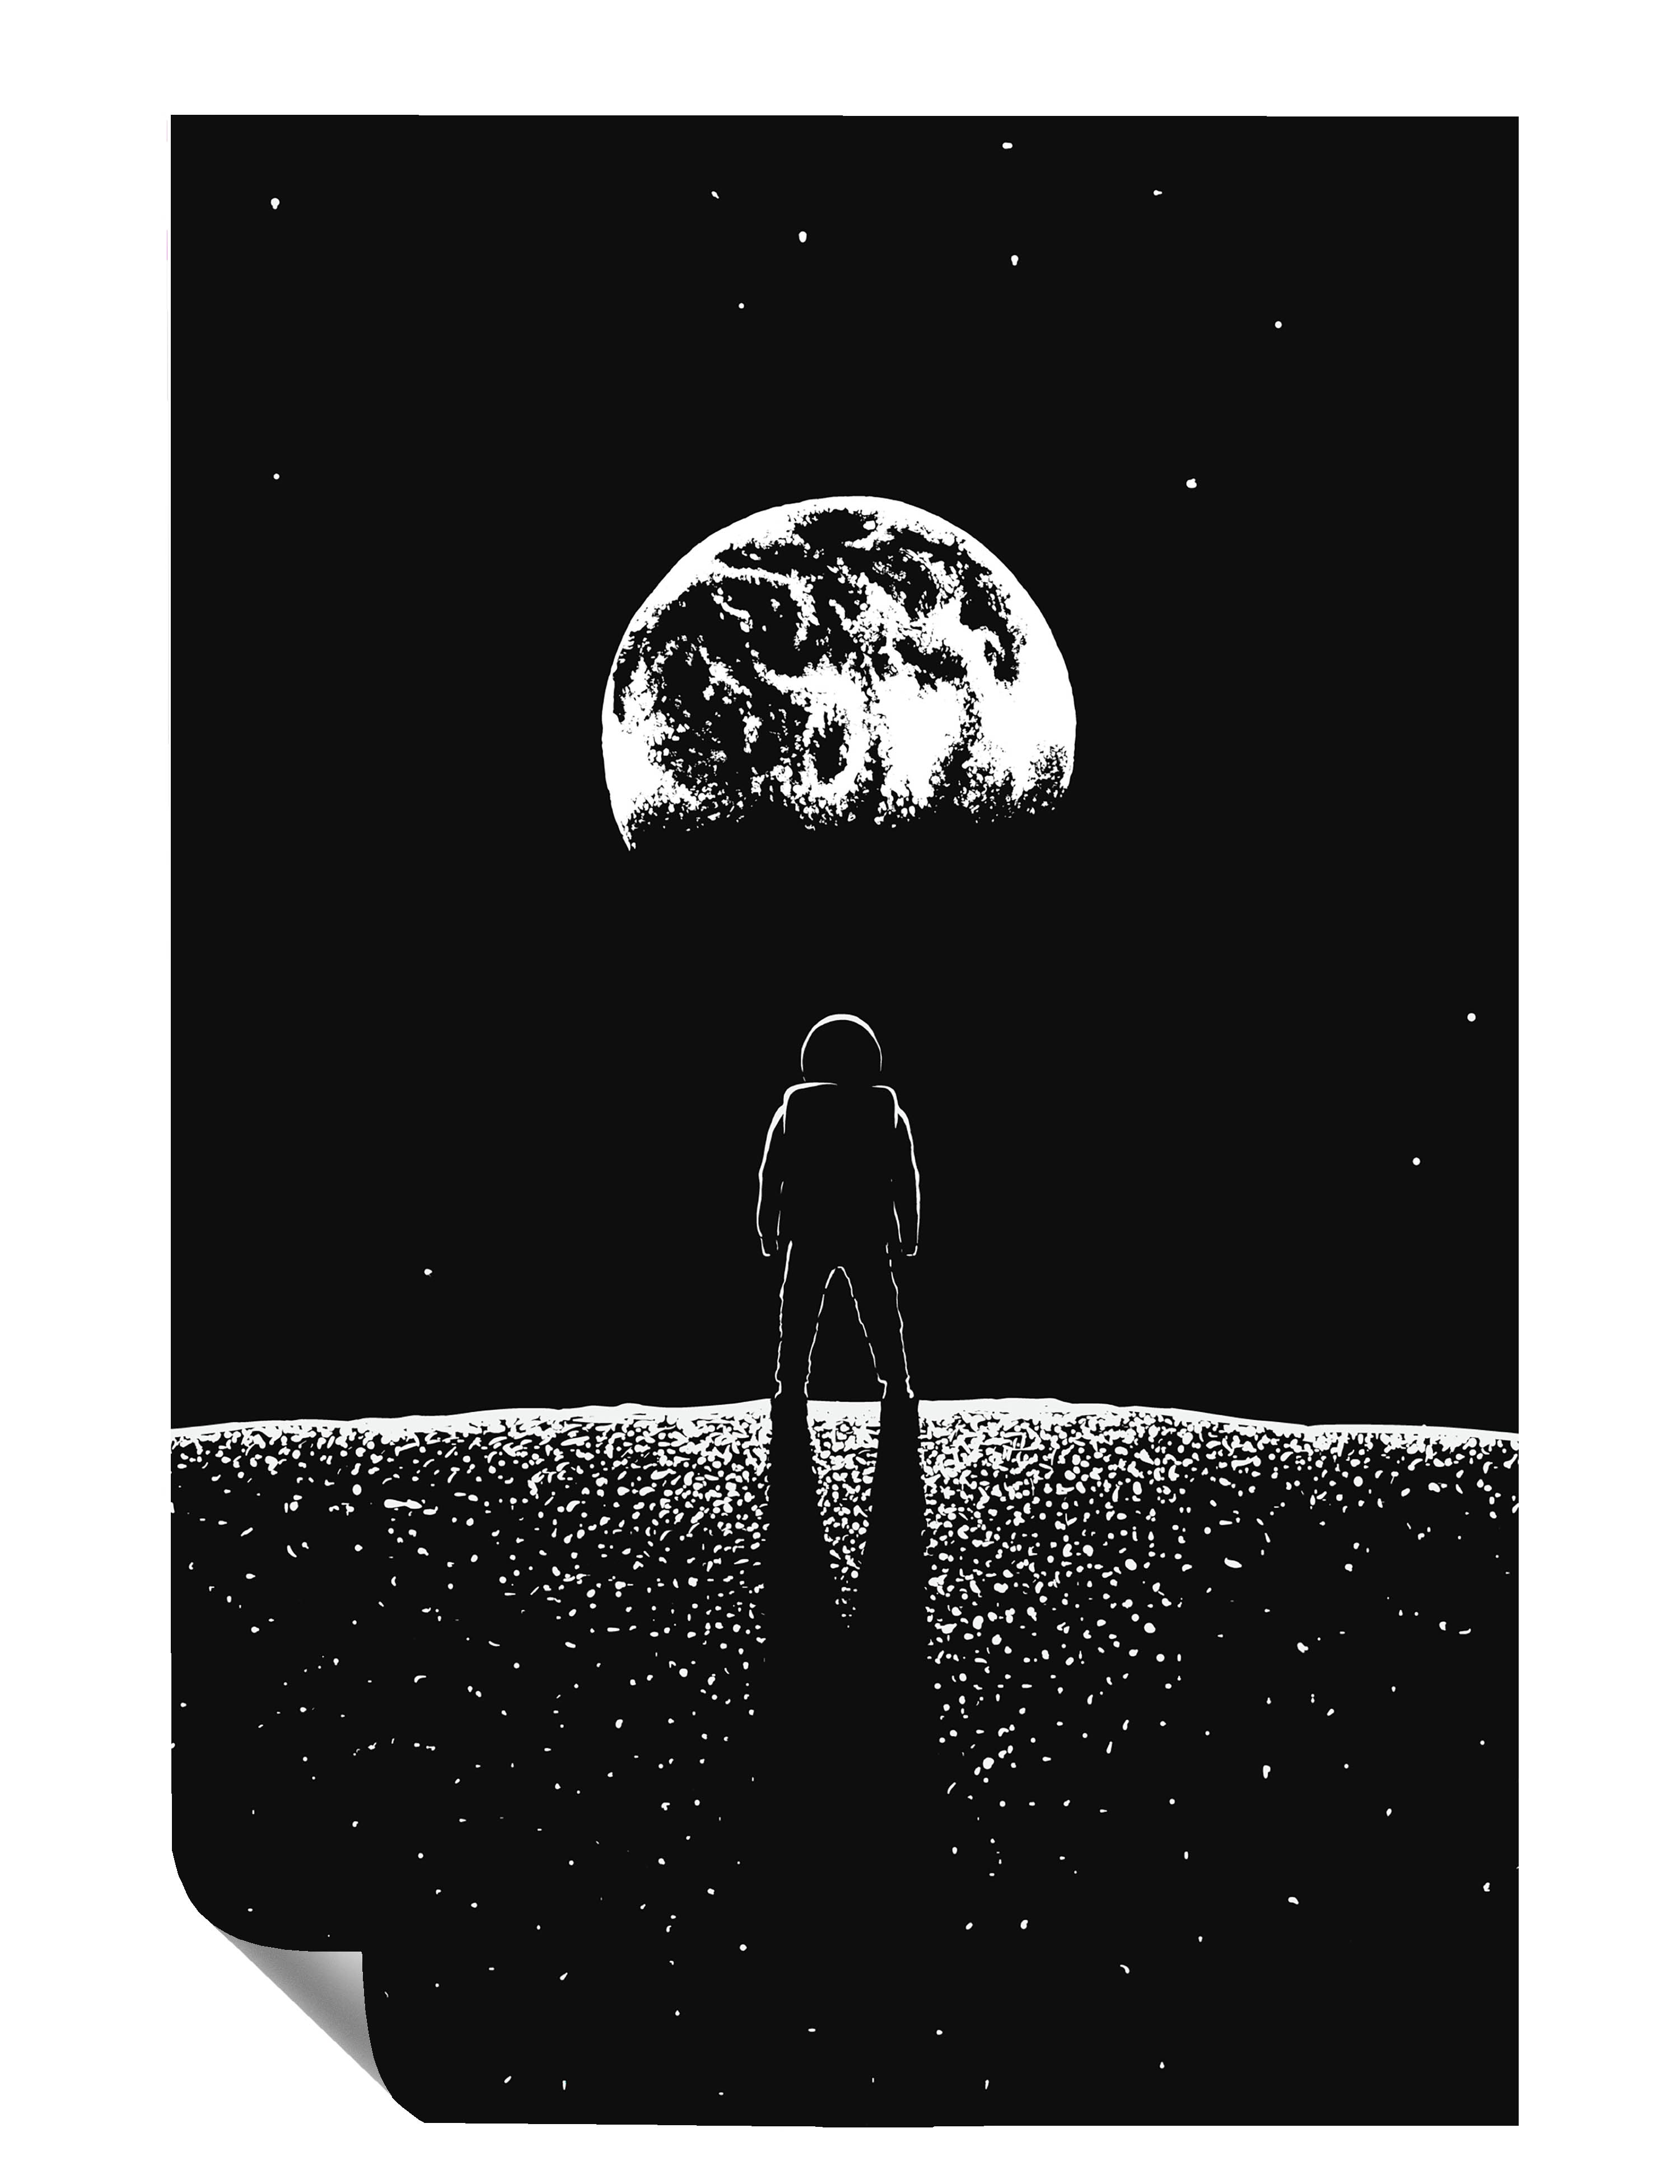 Astronaut Mond Erde Weltraum Illustration Kunstdruck Poster P0445